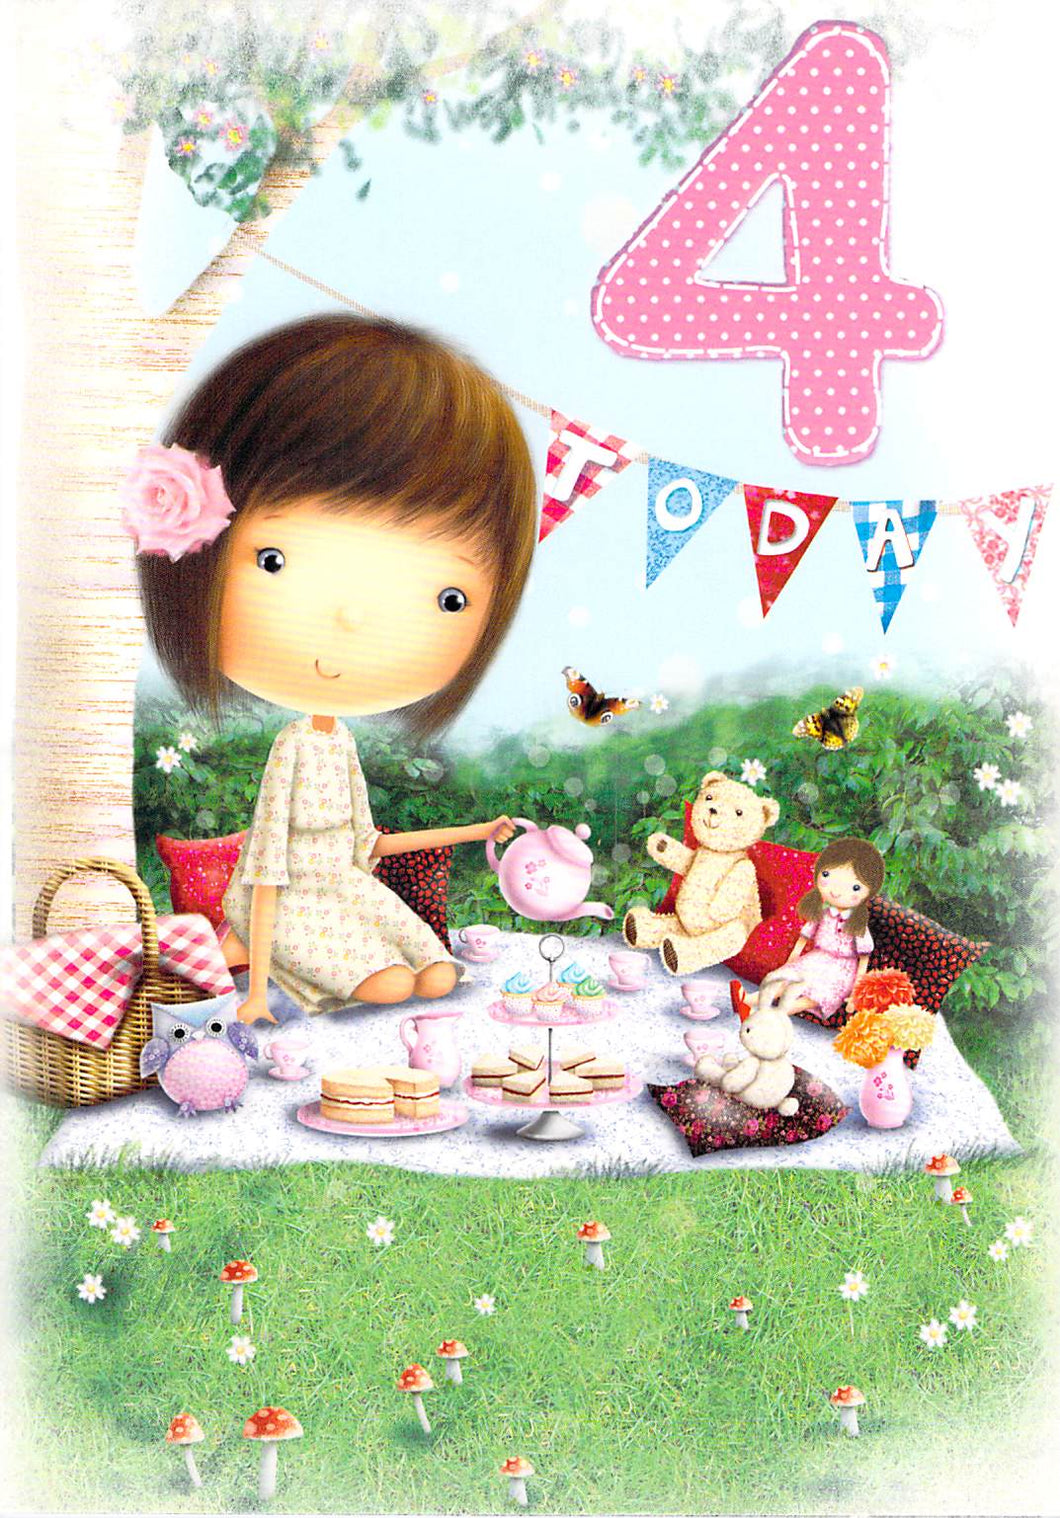 Age 4 - 4th Birthday - Teddy Bear Picnic - Greeting Card